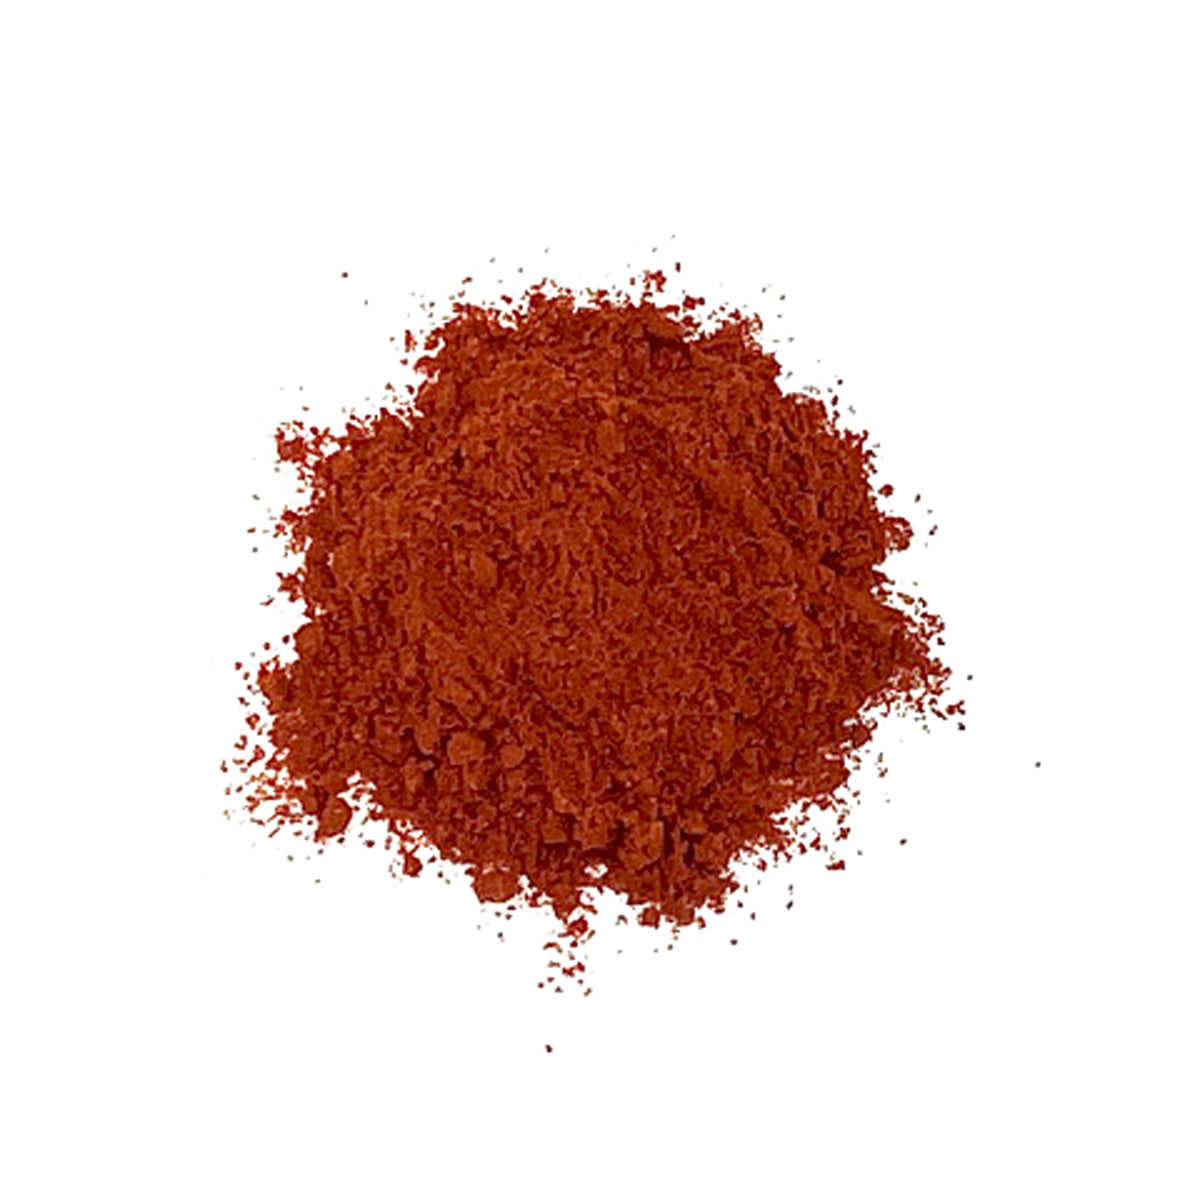 La Boite Indian Red Chili Powder